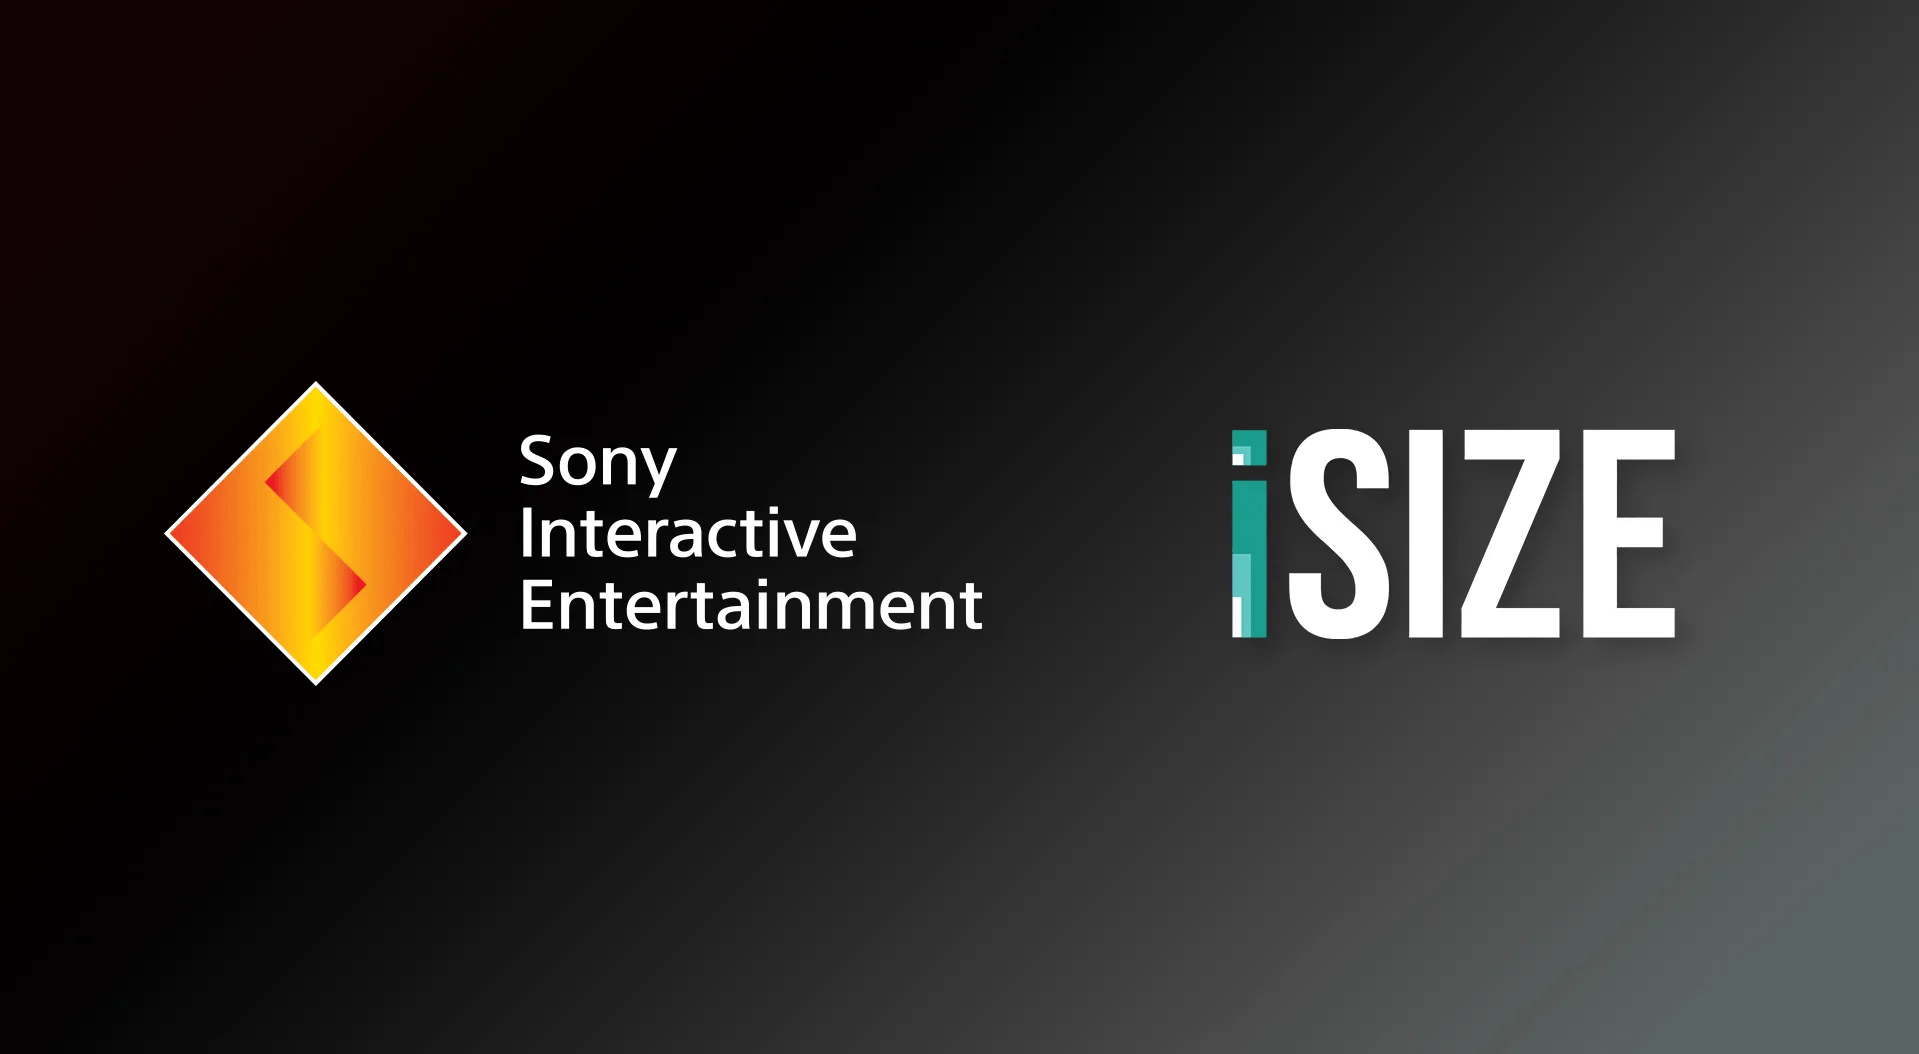 Không chịu thua kém đối thủ Sony công bố việc mua lại iSIZE